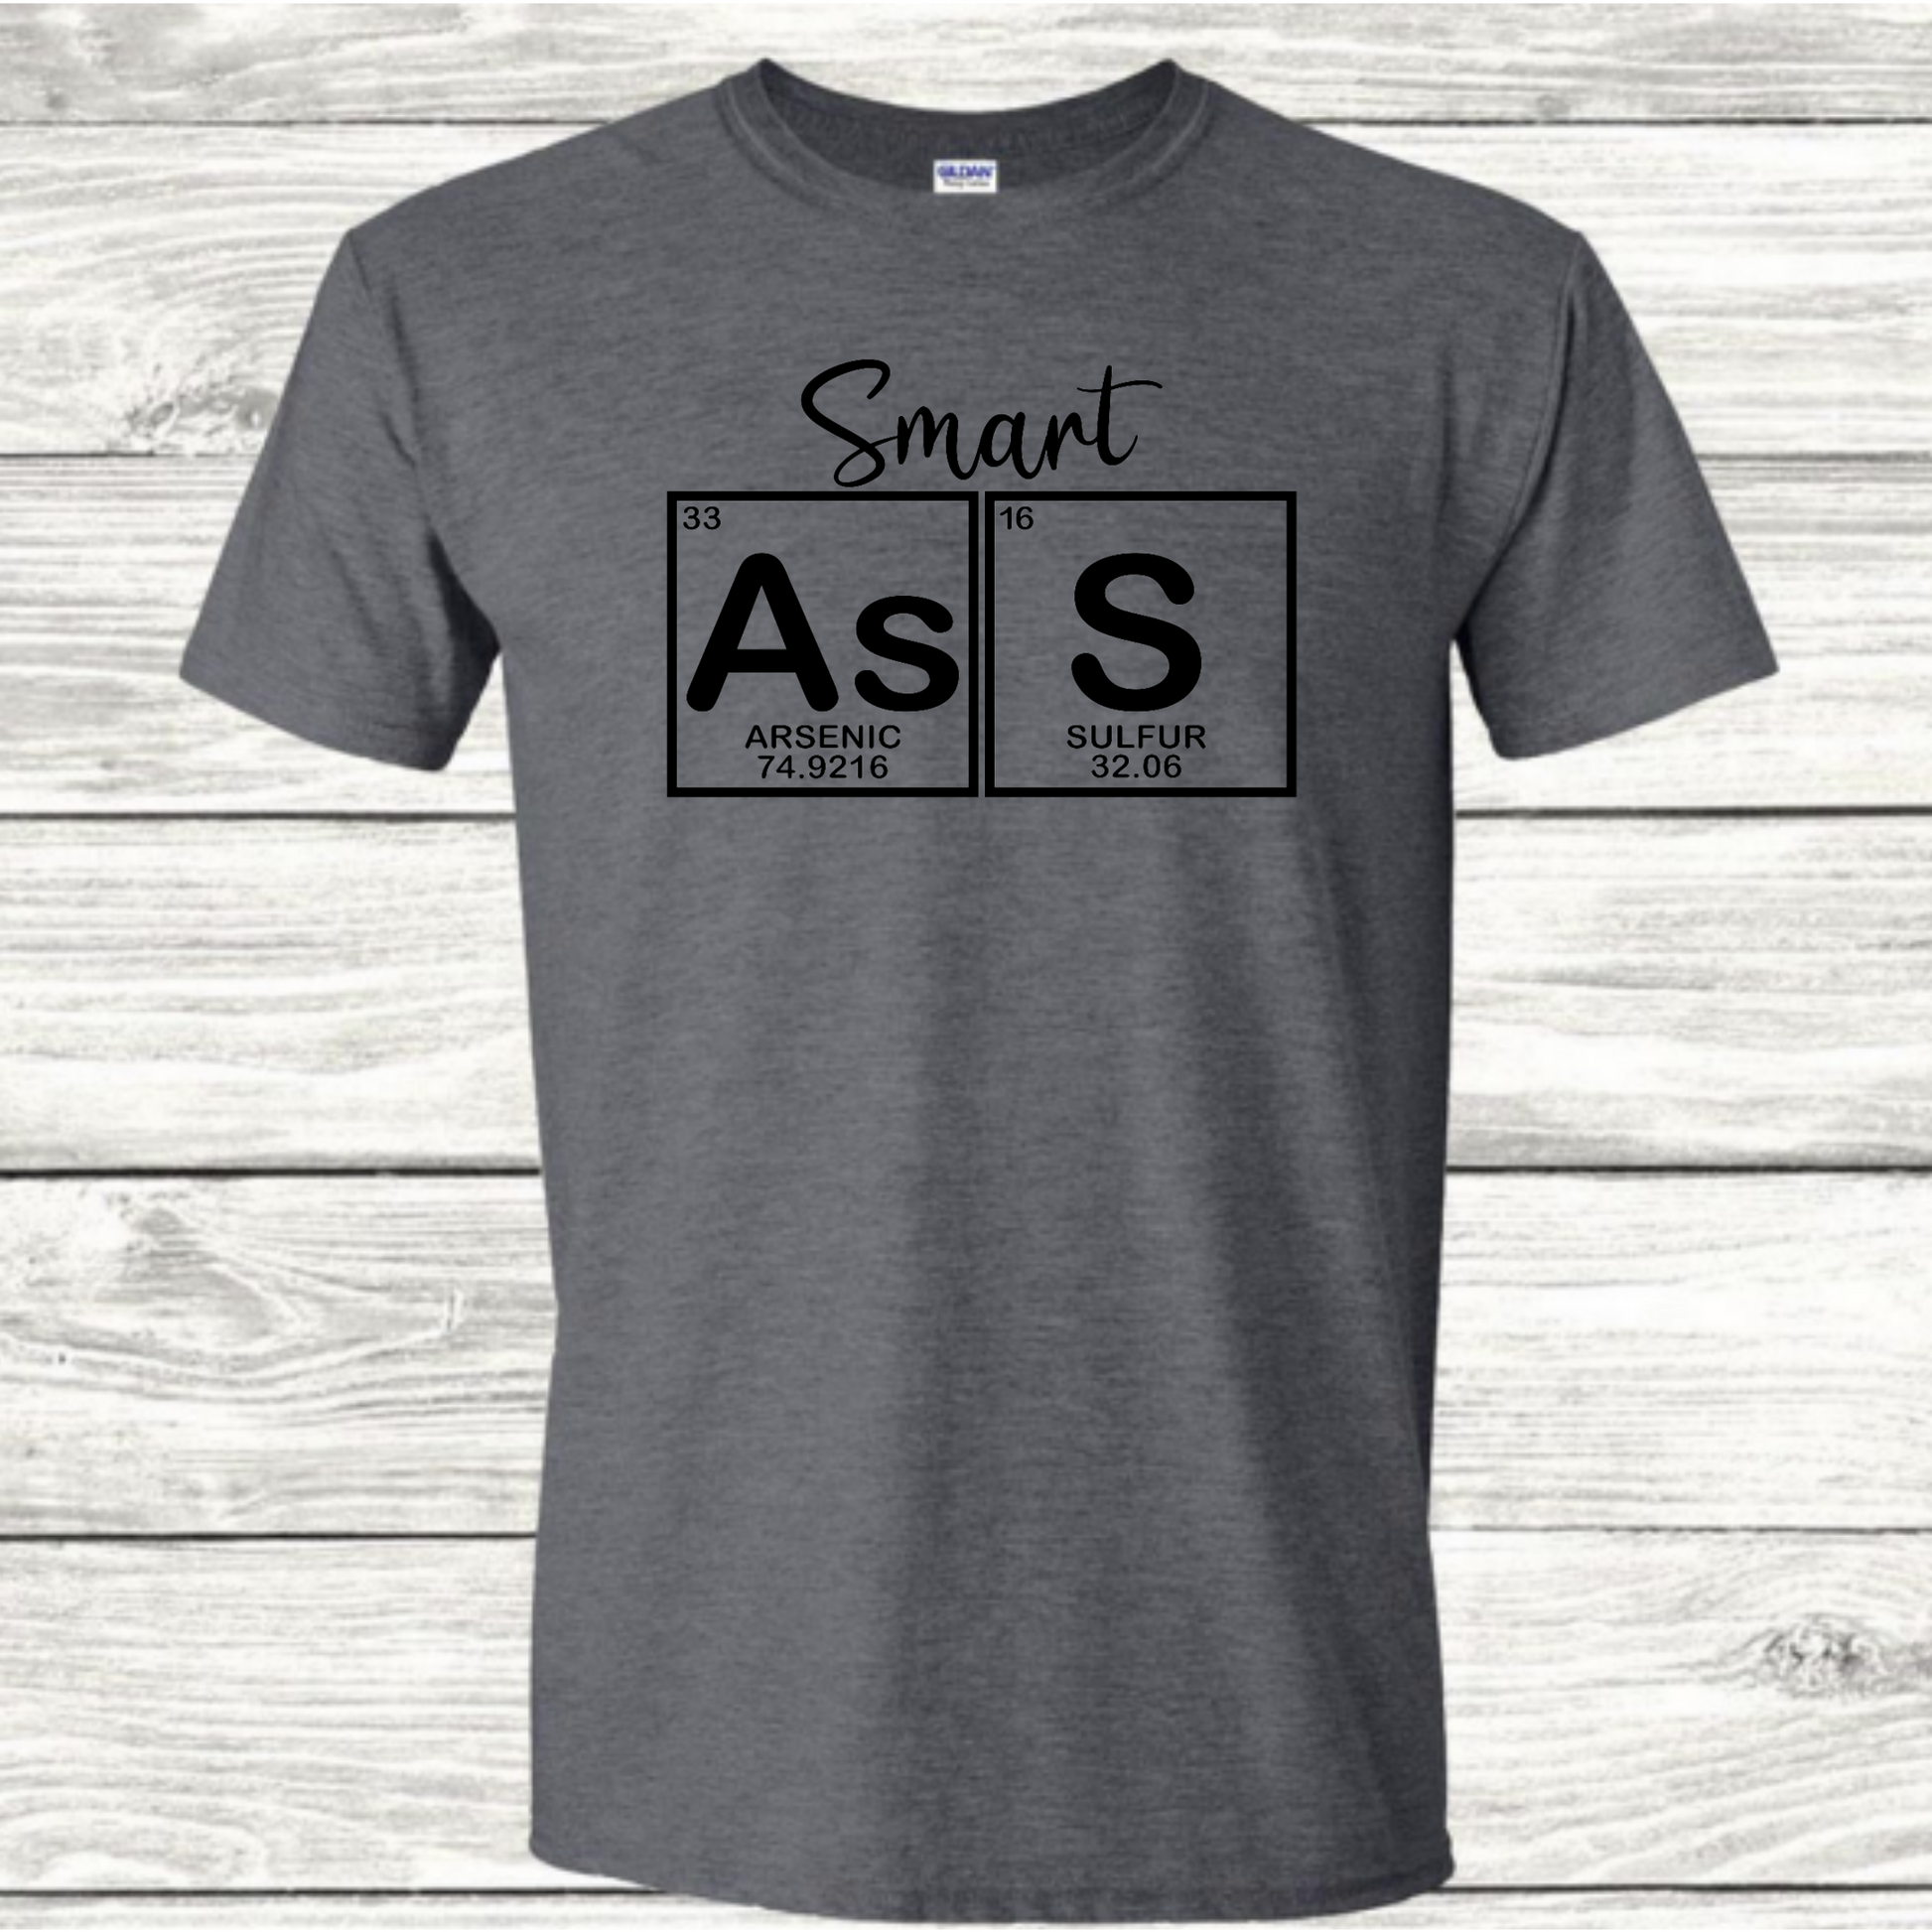 Smart Ass - Graphic T-Shirt - Mister Snarky's